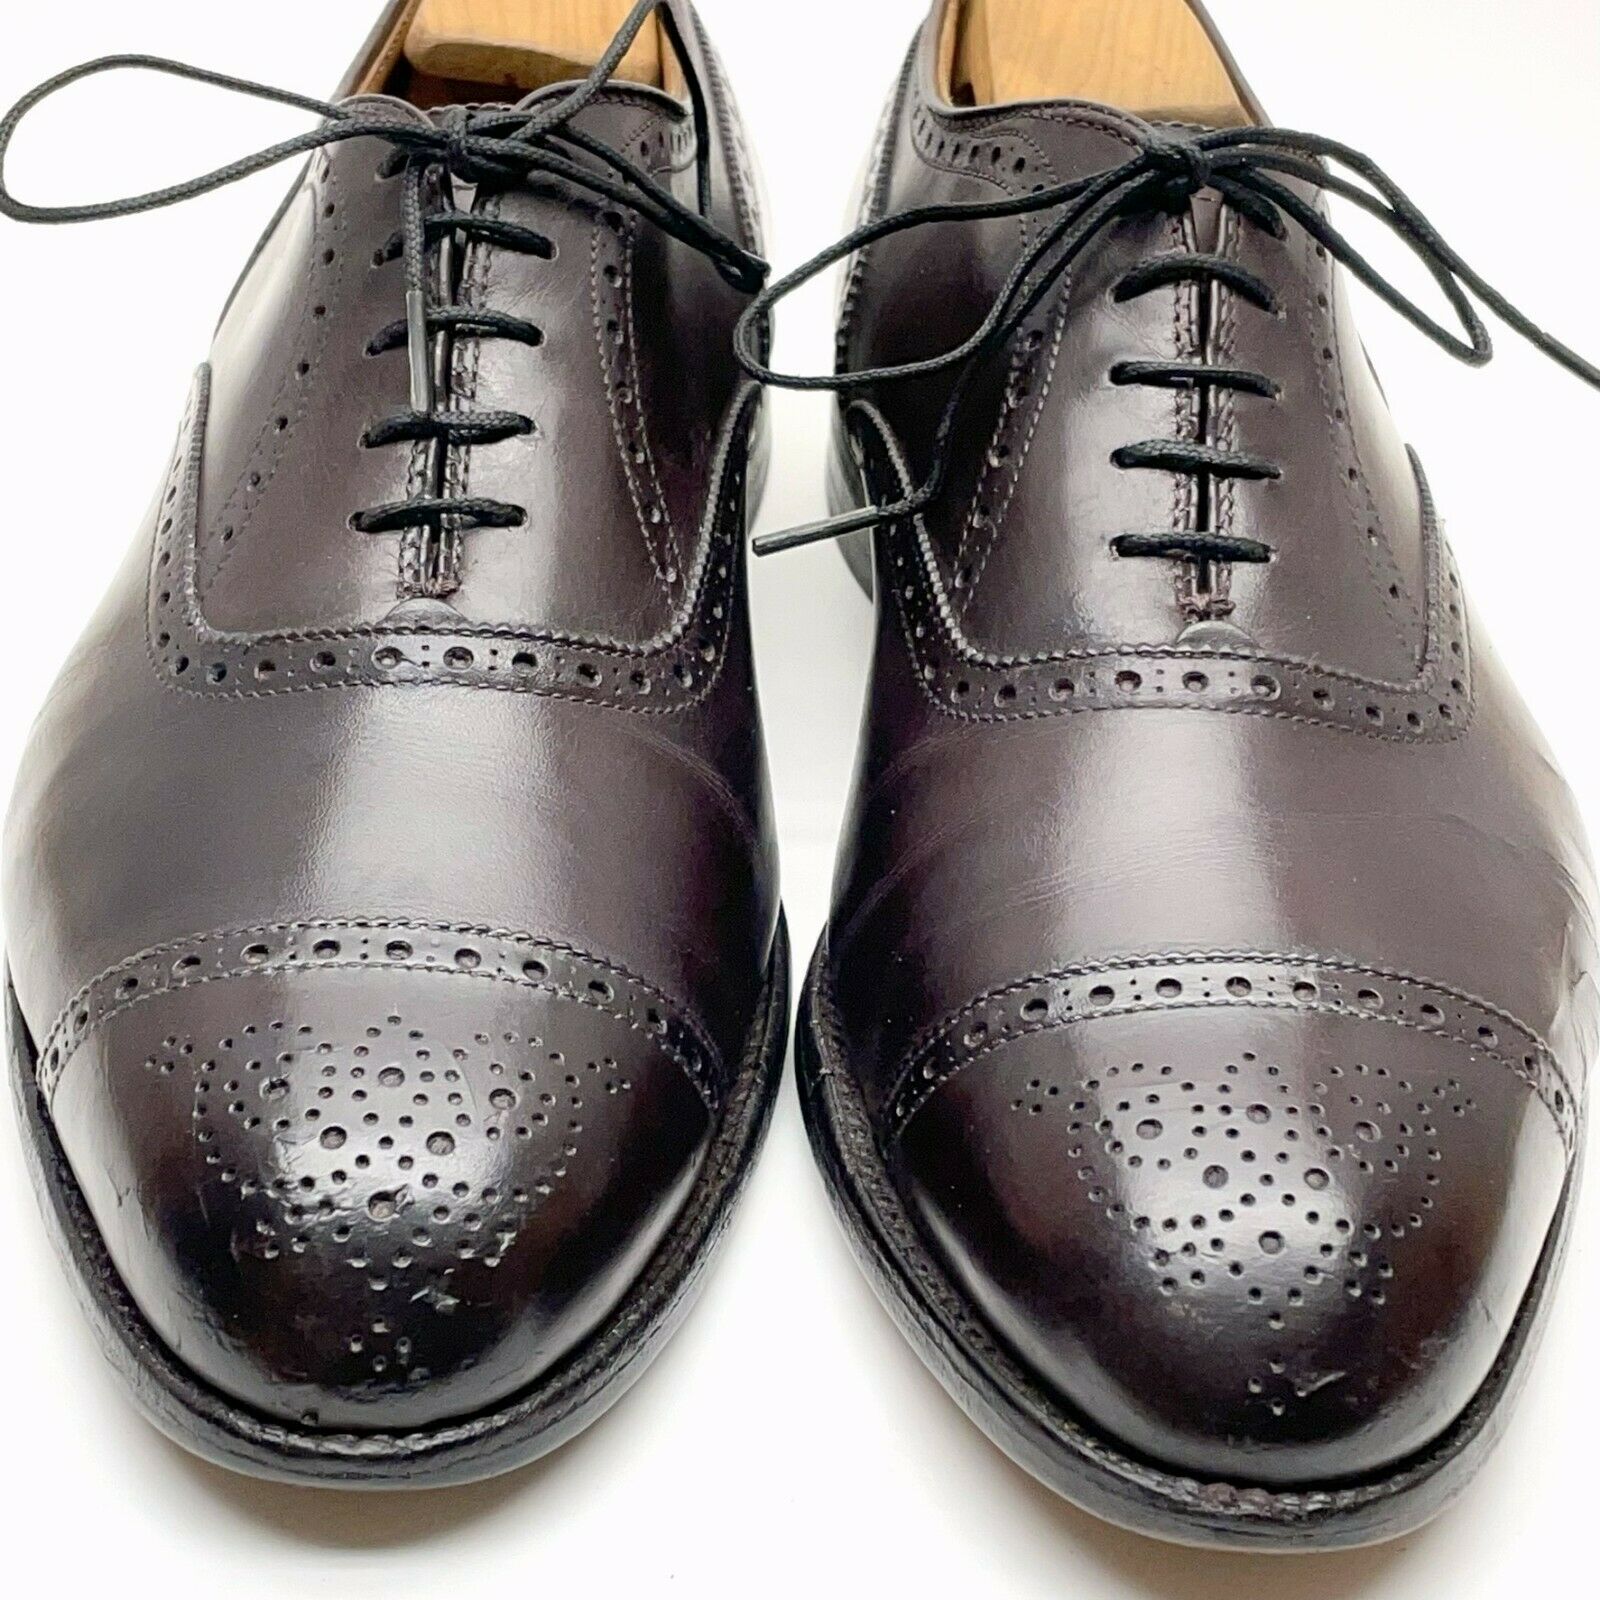 Alden 908 Medallion Cap-Toe Balmoral Burgundy Leather Dress Men's Shoes 10.5 EEE